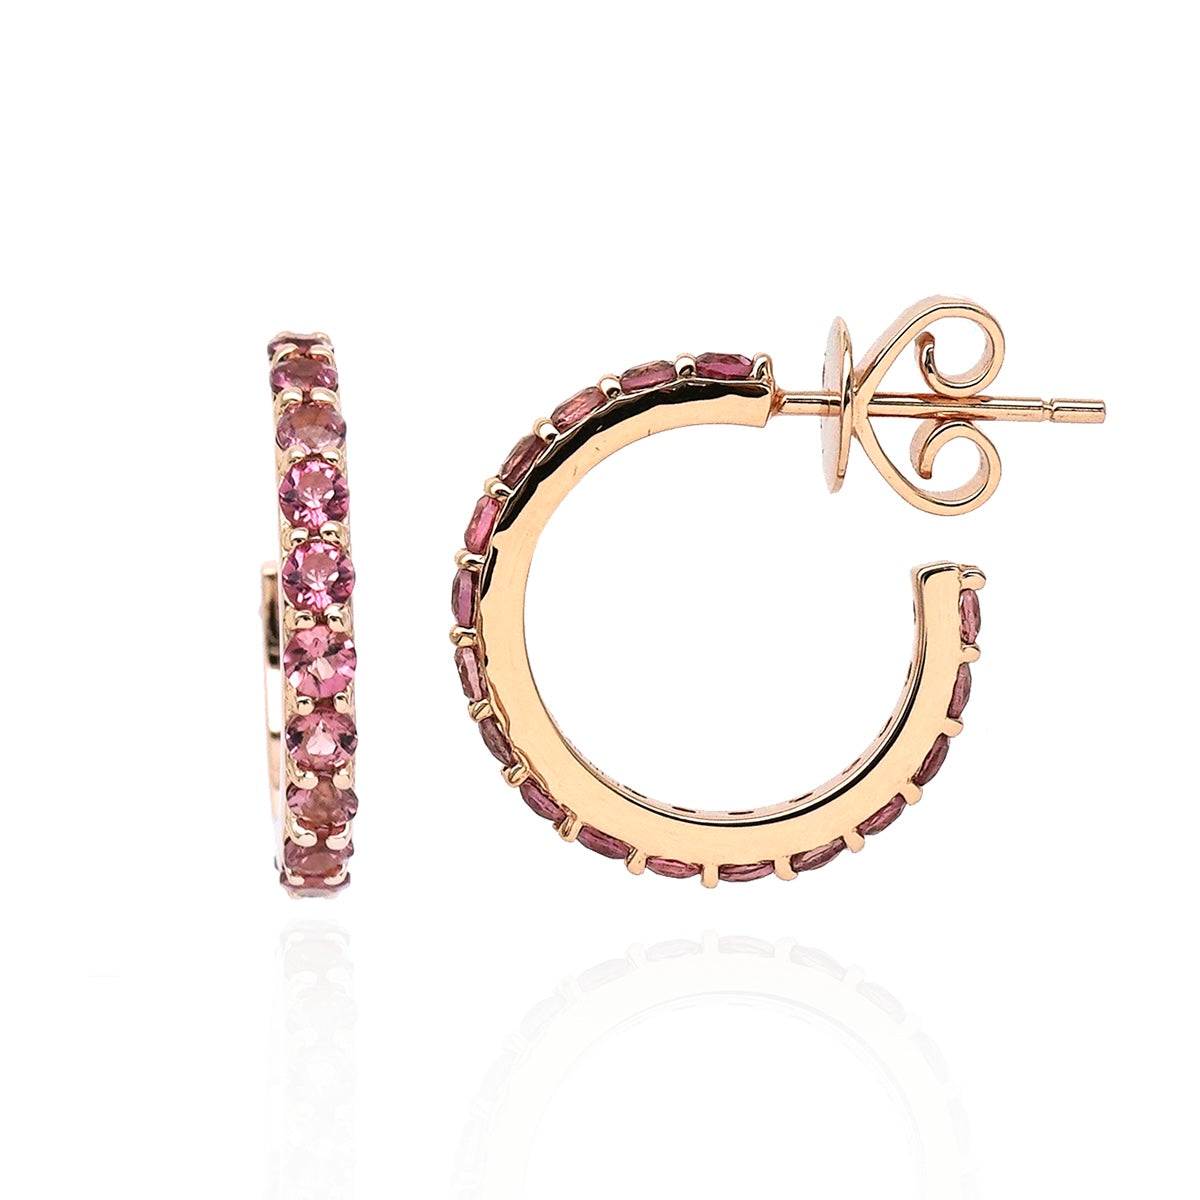 Tourmaline mini hoop earrings. Feminine and elegant pink gemstone earrings.